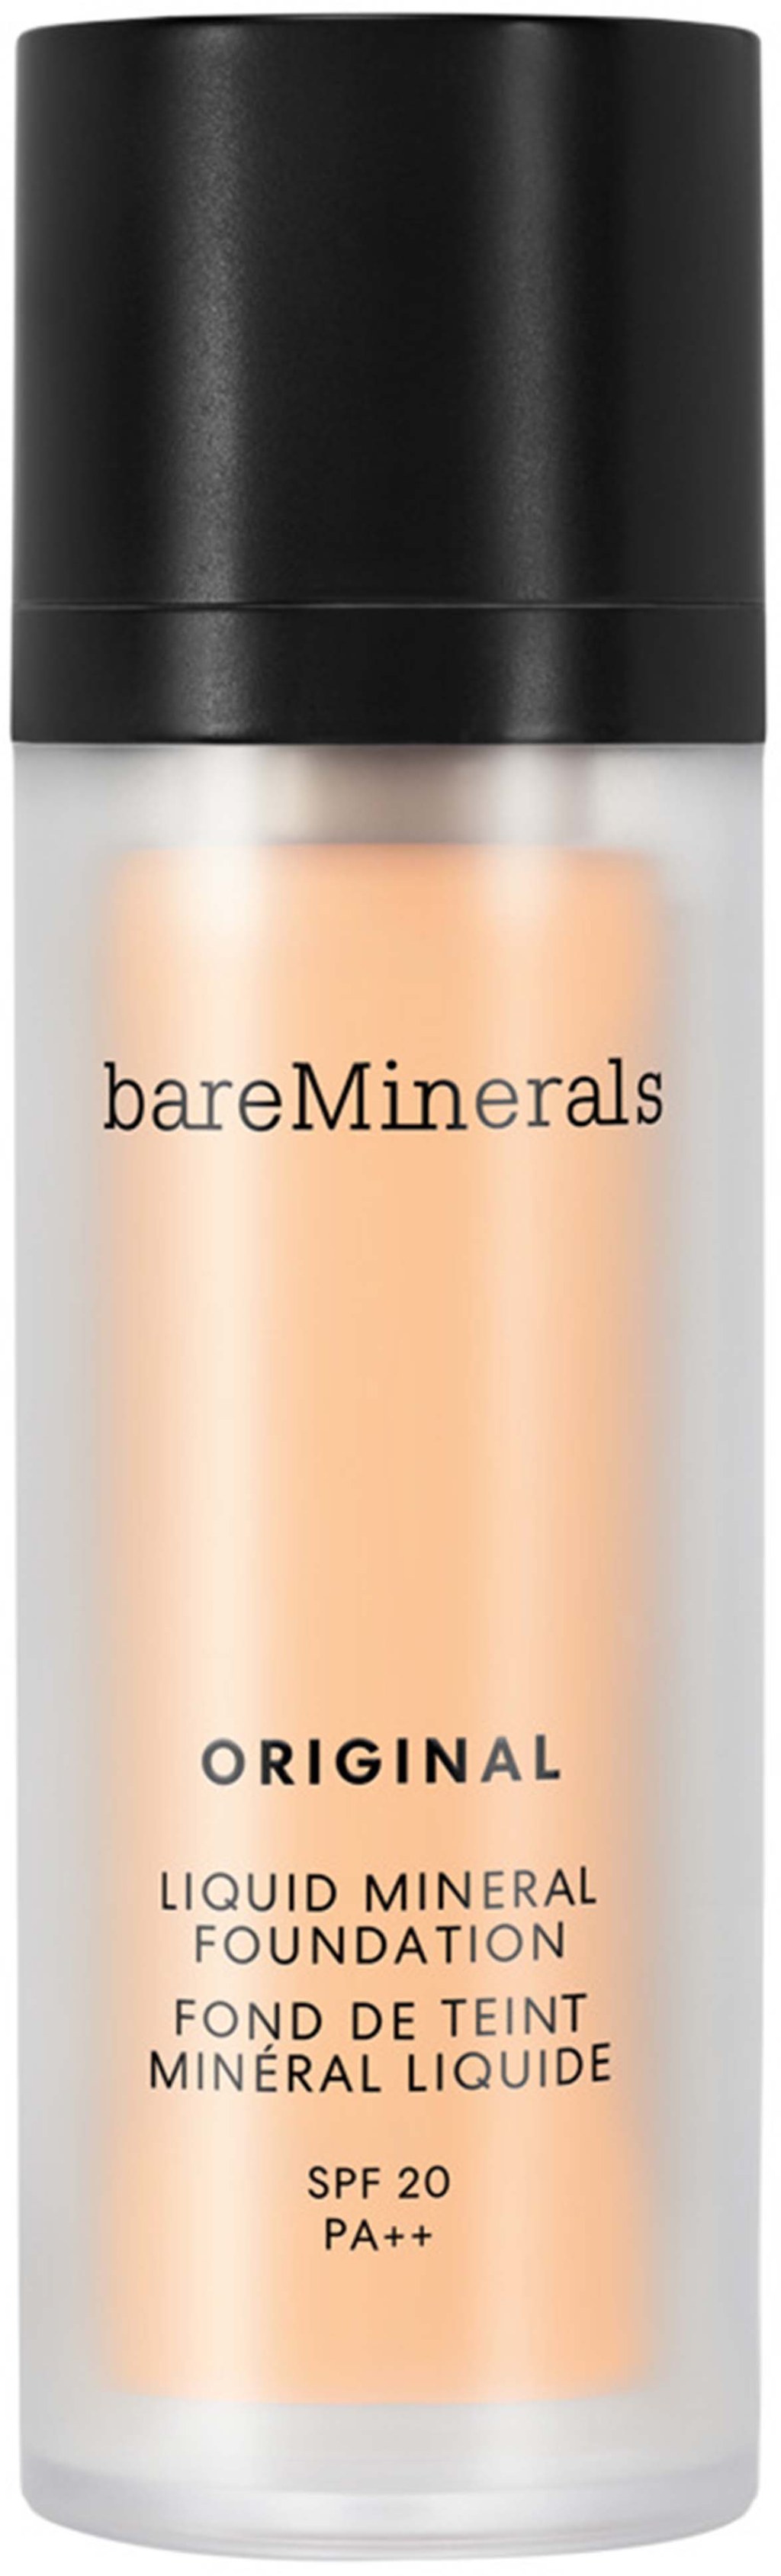 Picture of: bareMinerals Original Liquid Mineral Foundation SPF  Fairly Medium